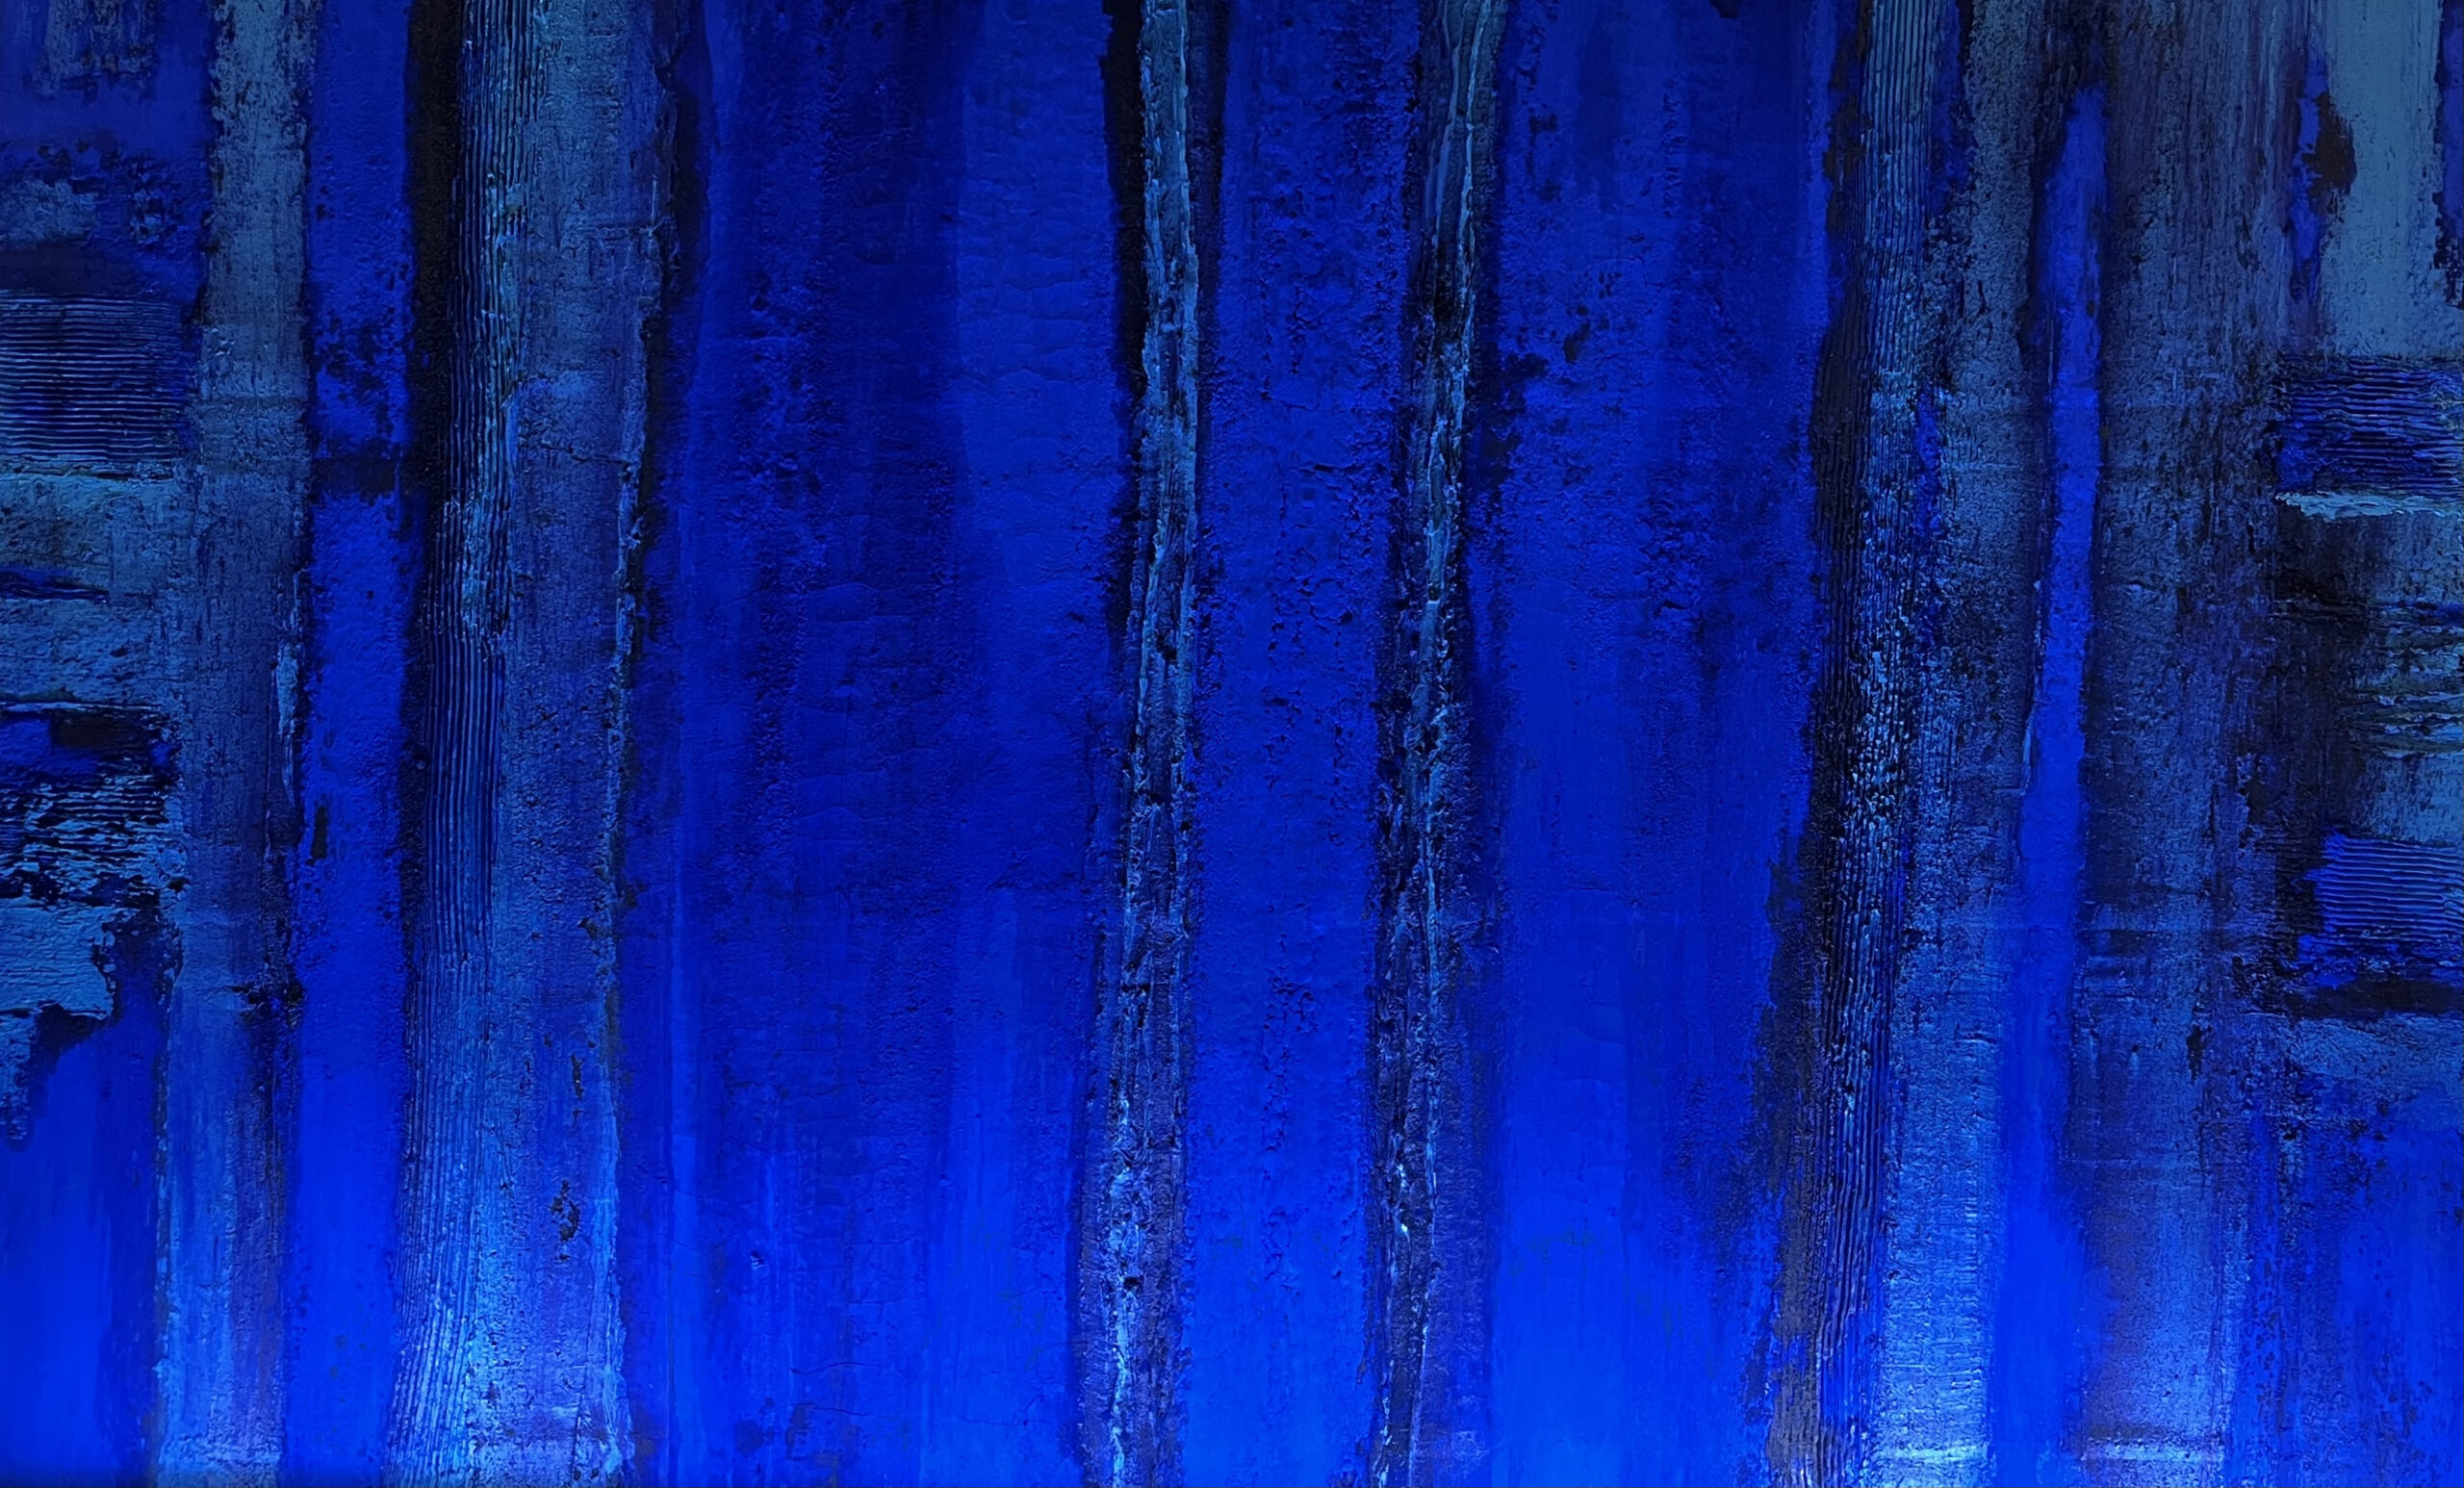 Deatil Marcello Lo Giudice maalist "Eden blue"